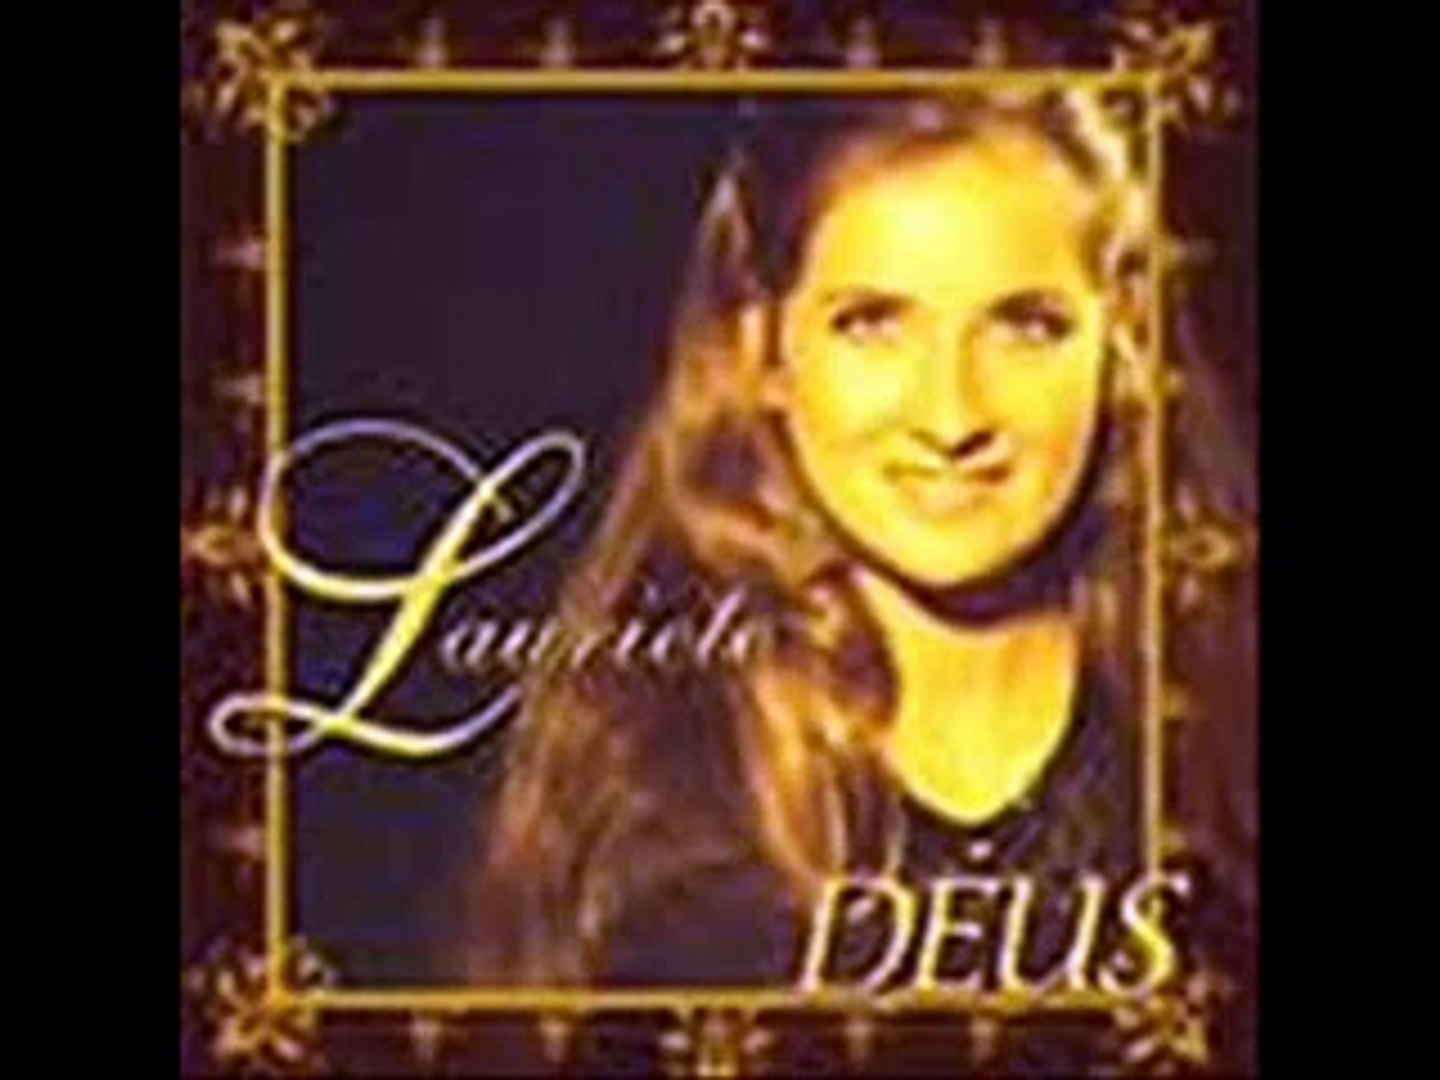 Lauriete - Dias de Elias